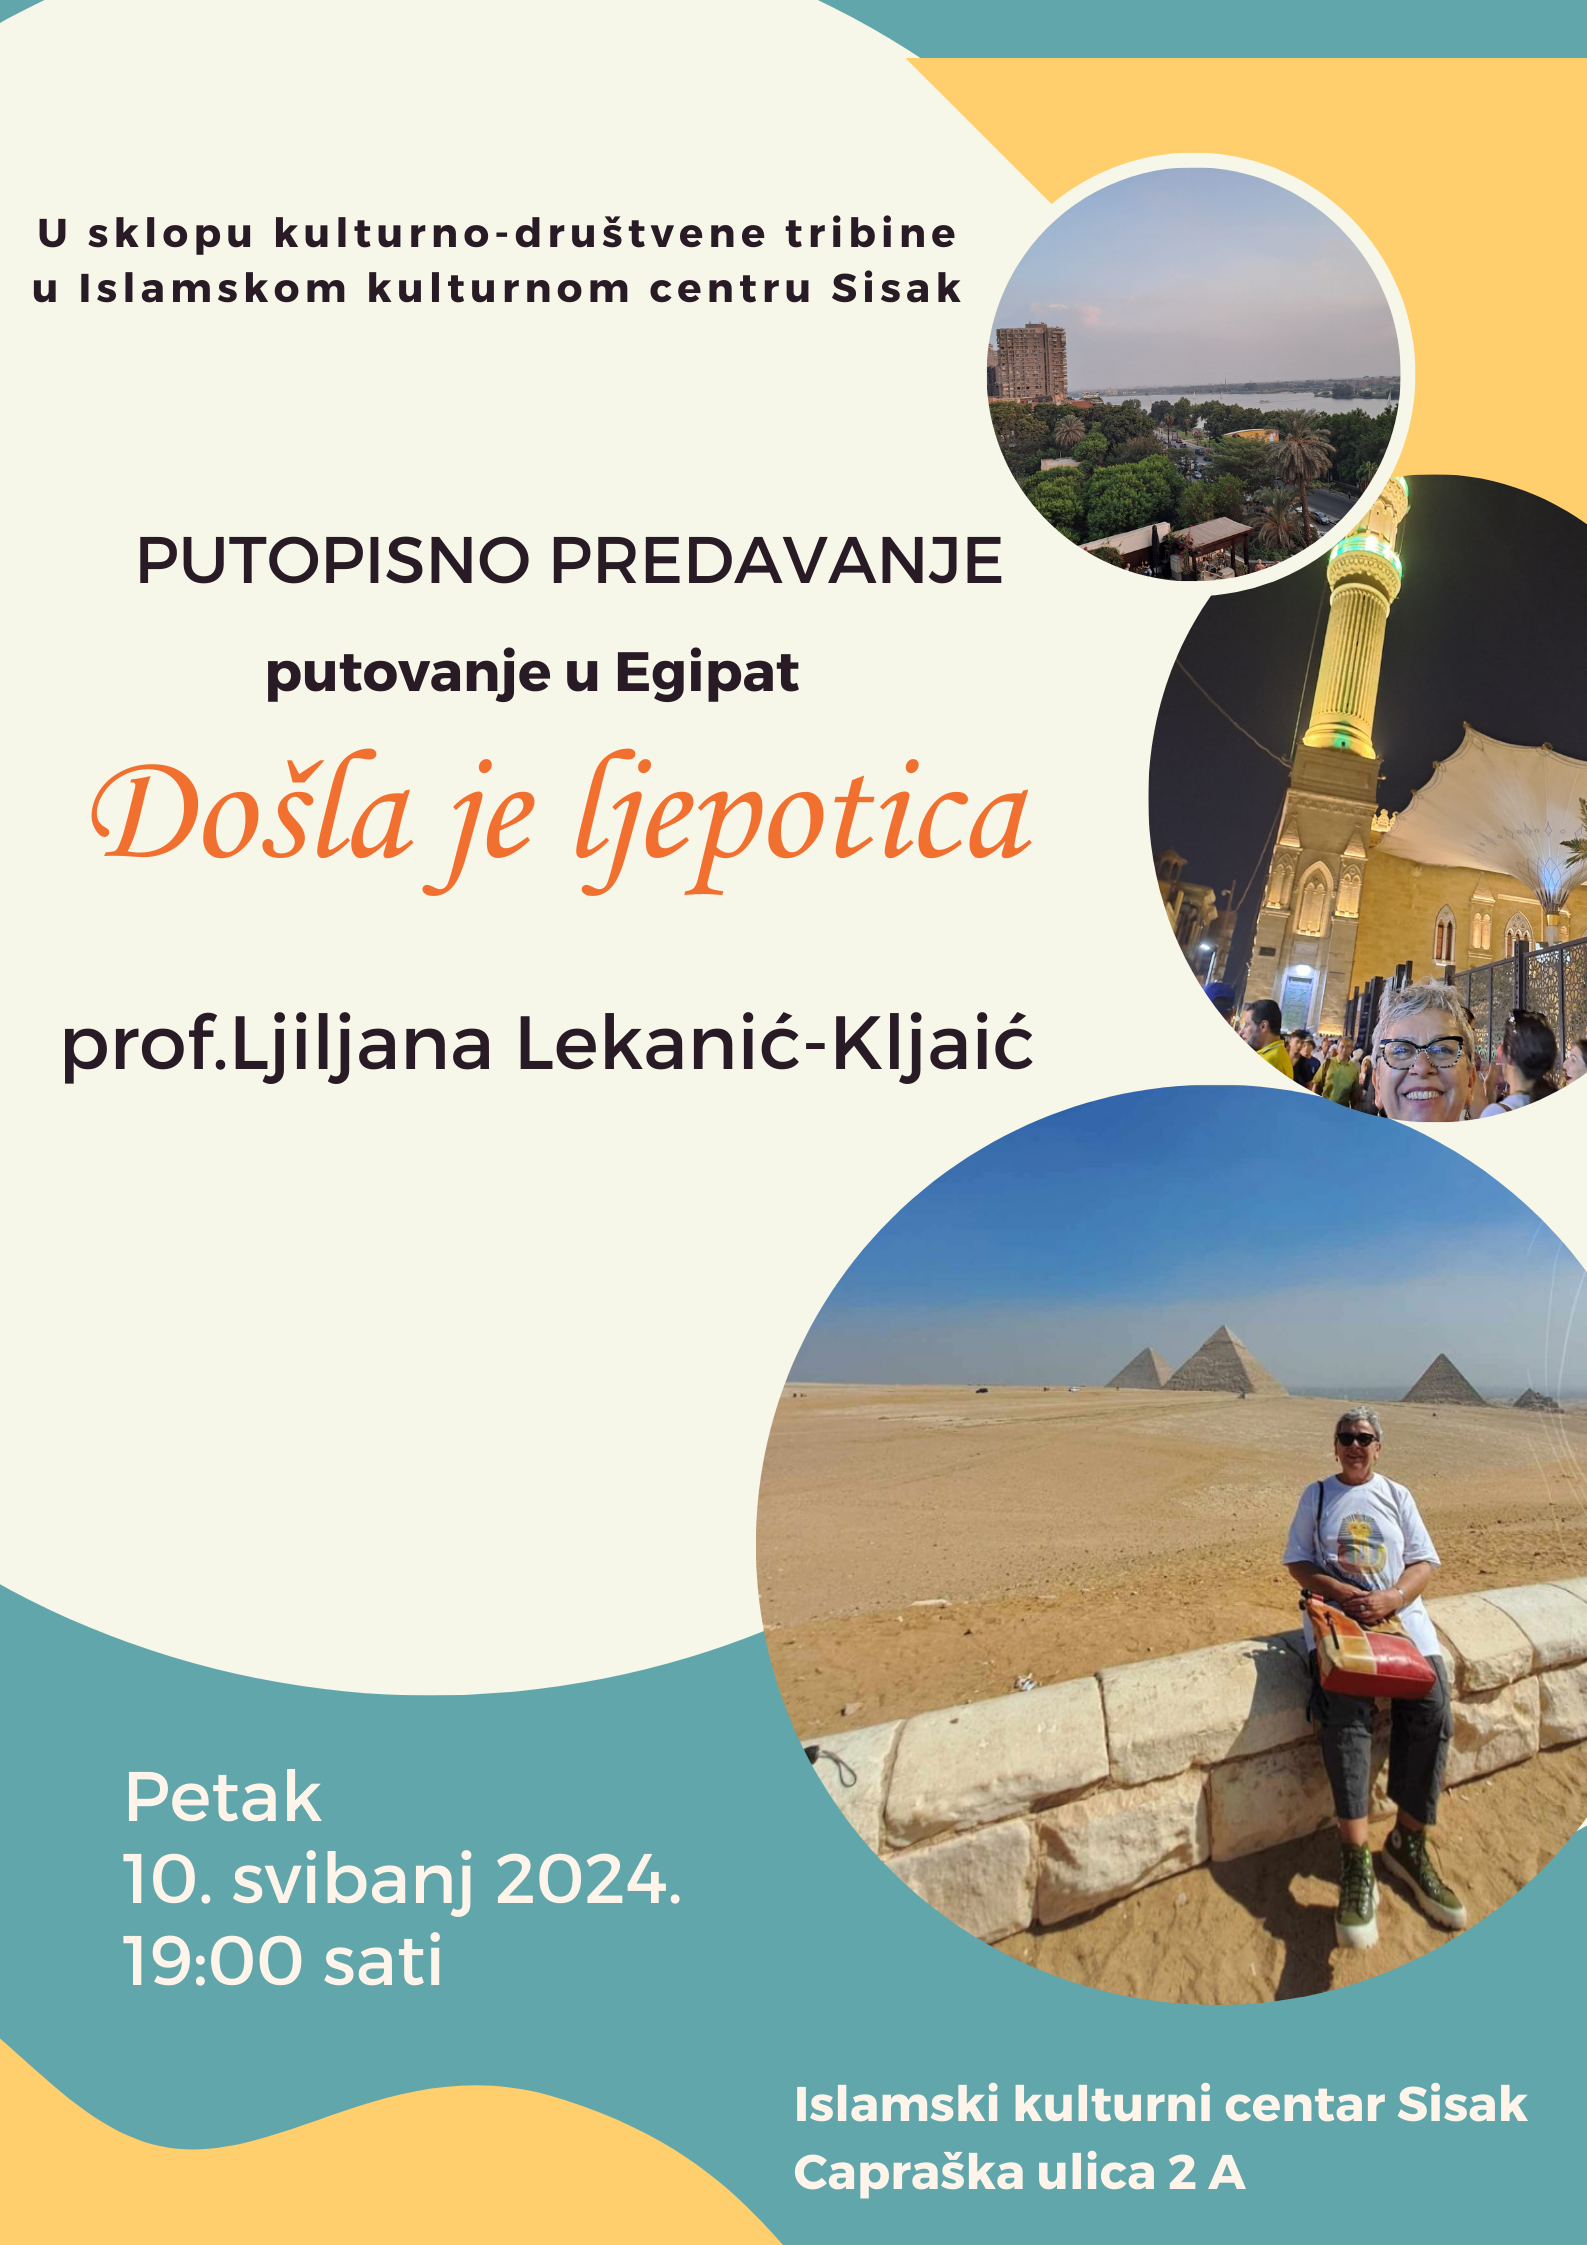 You are currently viewing Putopisno predavanje “Putovanje u Egipat” u Islamskom kulturnom centru Sisak